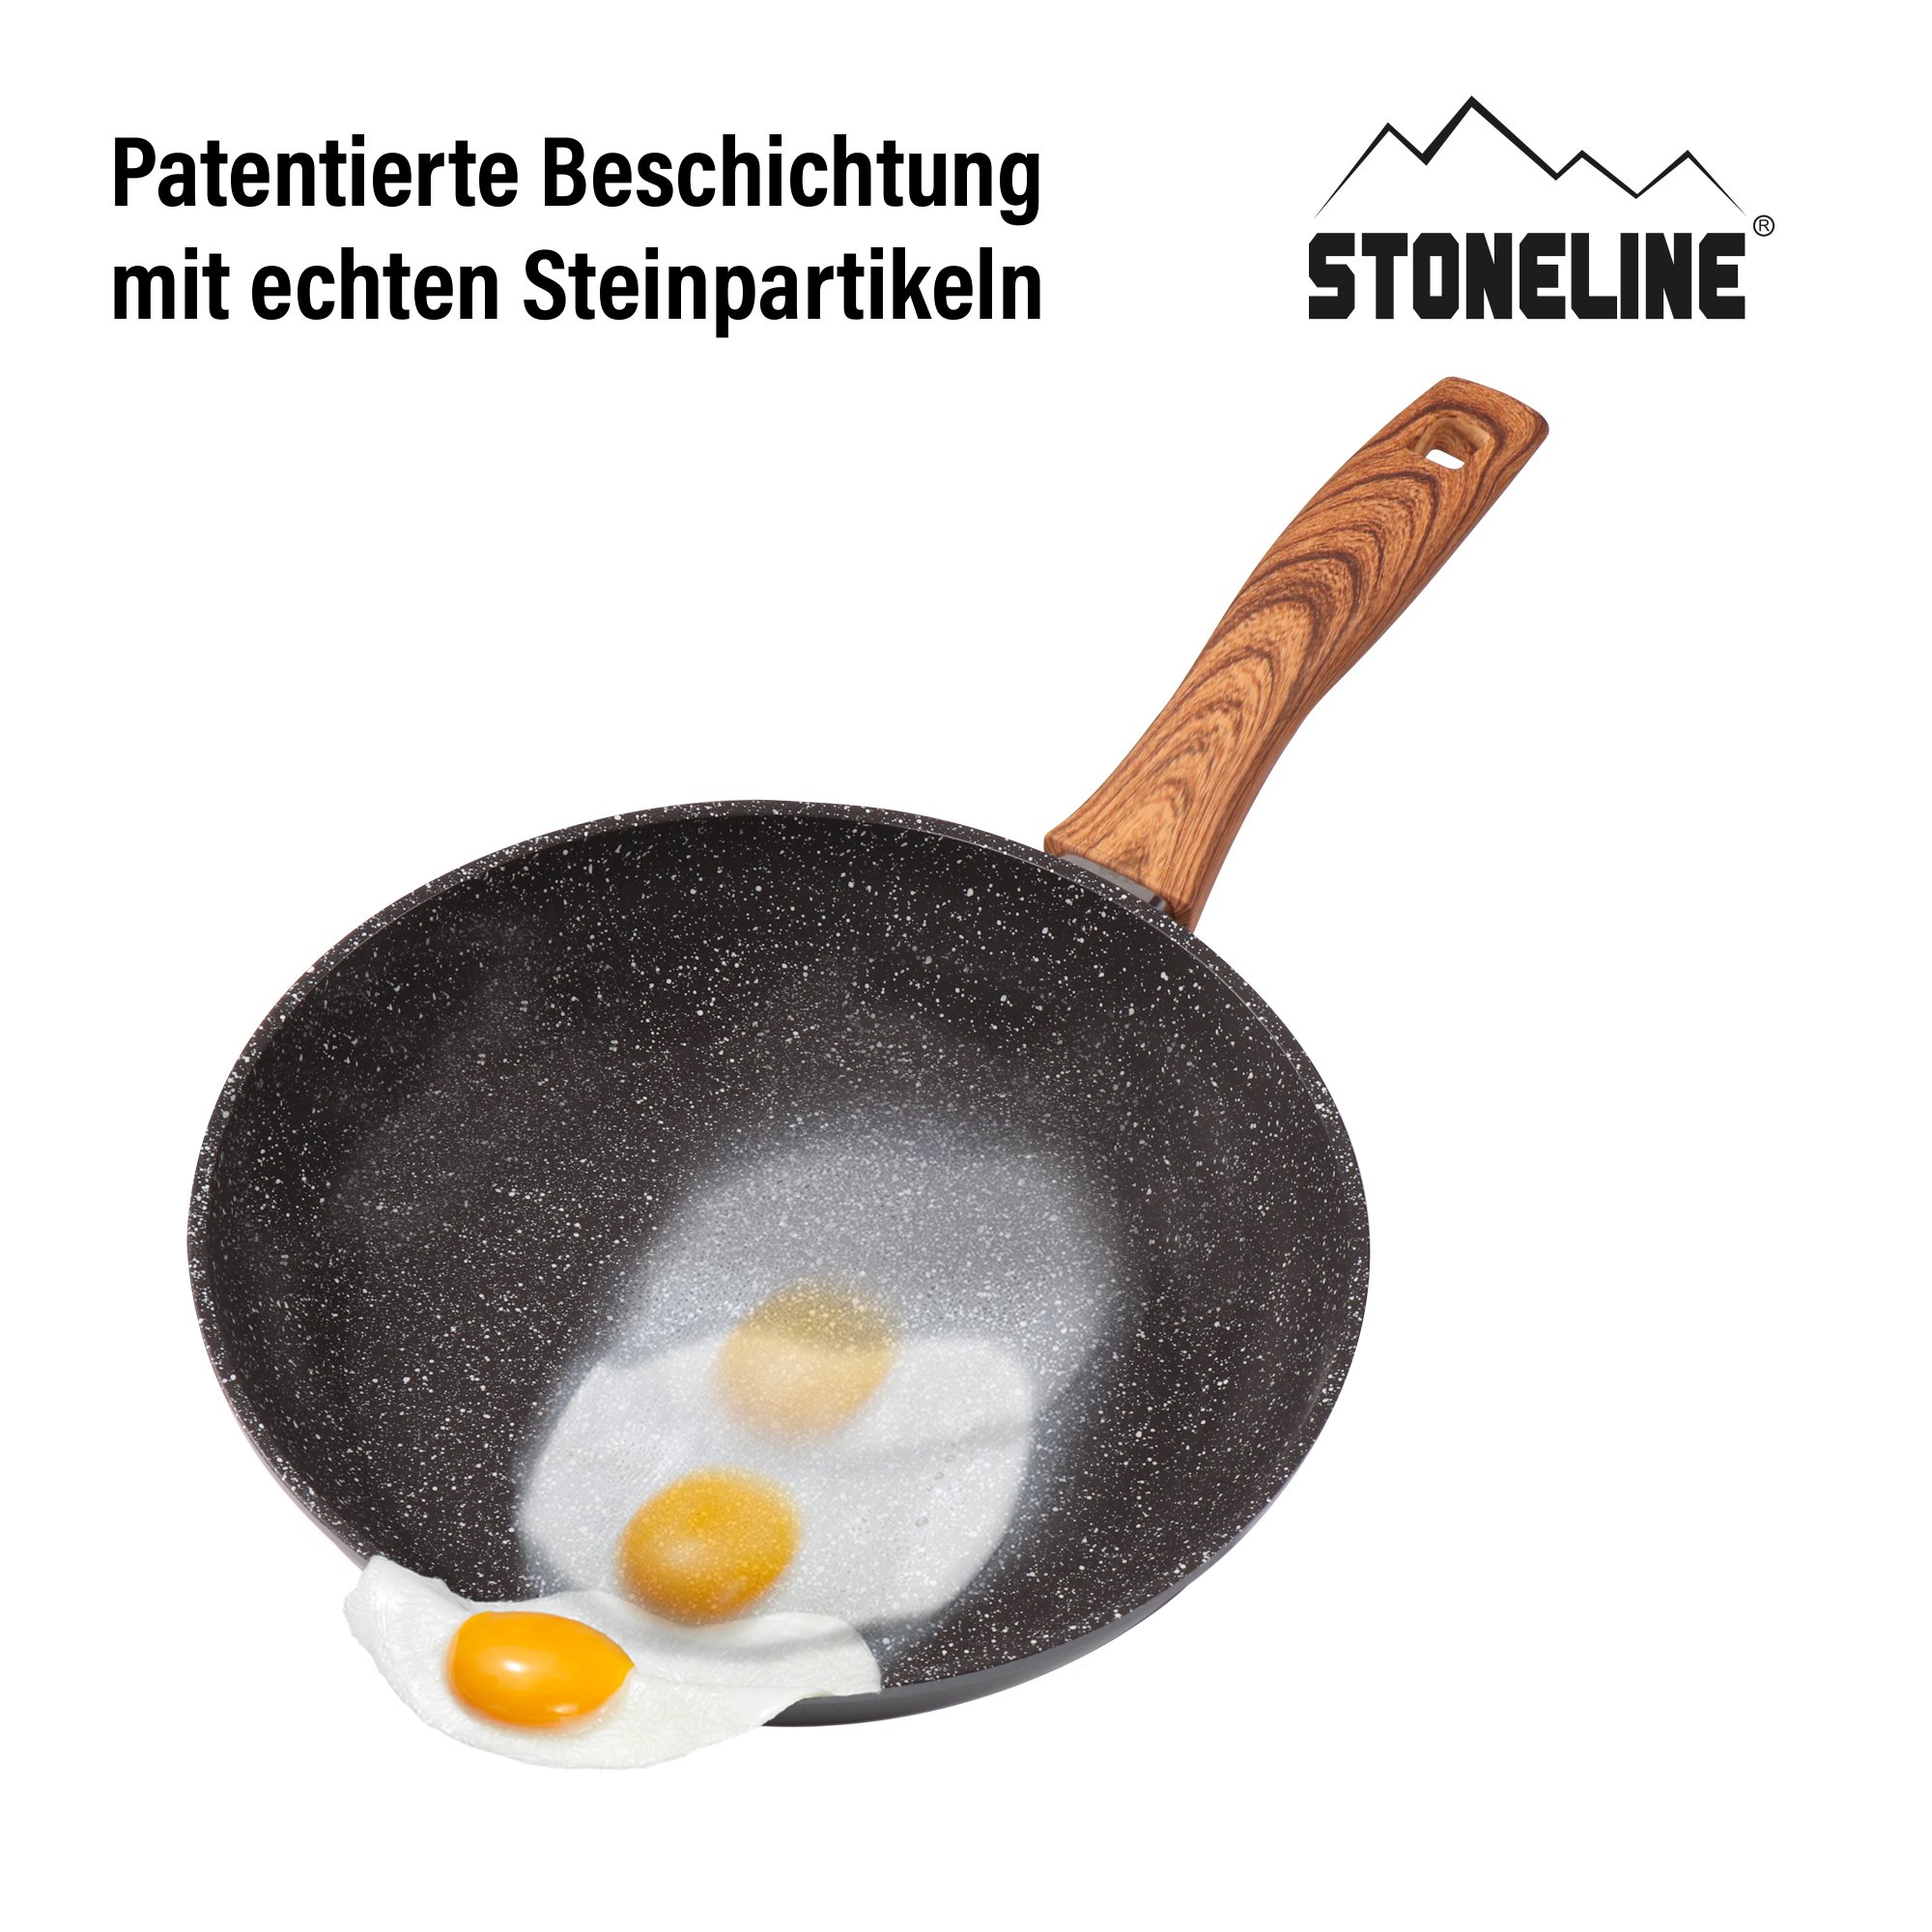 STONELINE® Back to Nature Kochgeschirr-Set, 14-teilig, mit Deckeln, Töpfe & Pfannen Induktion geeignet